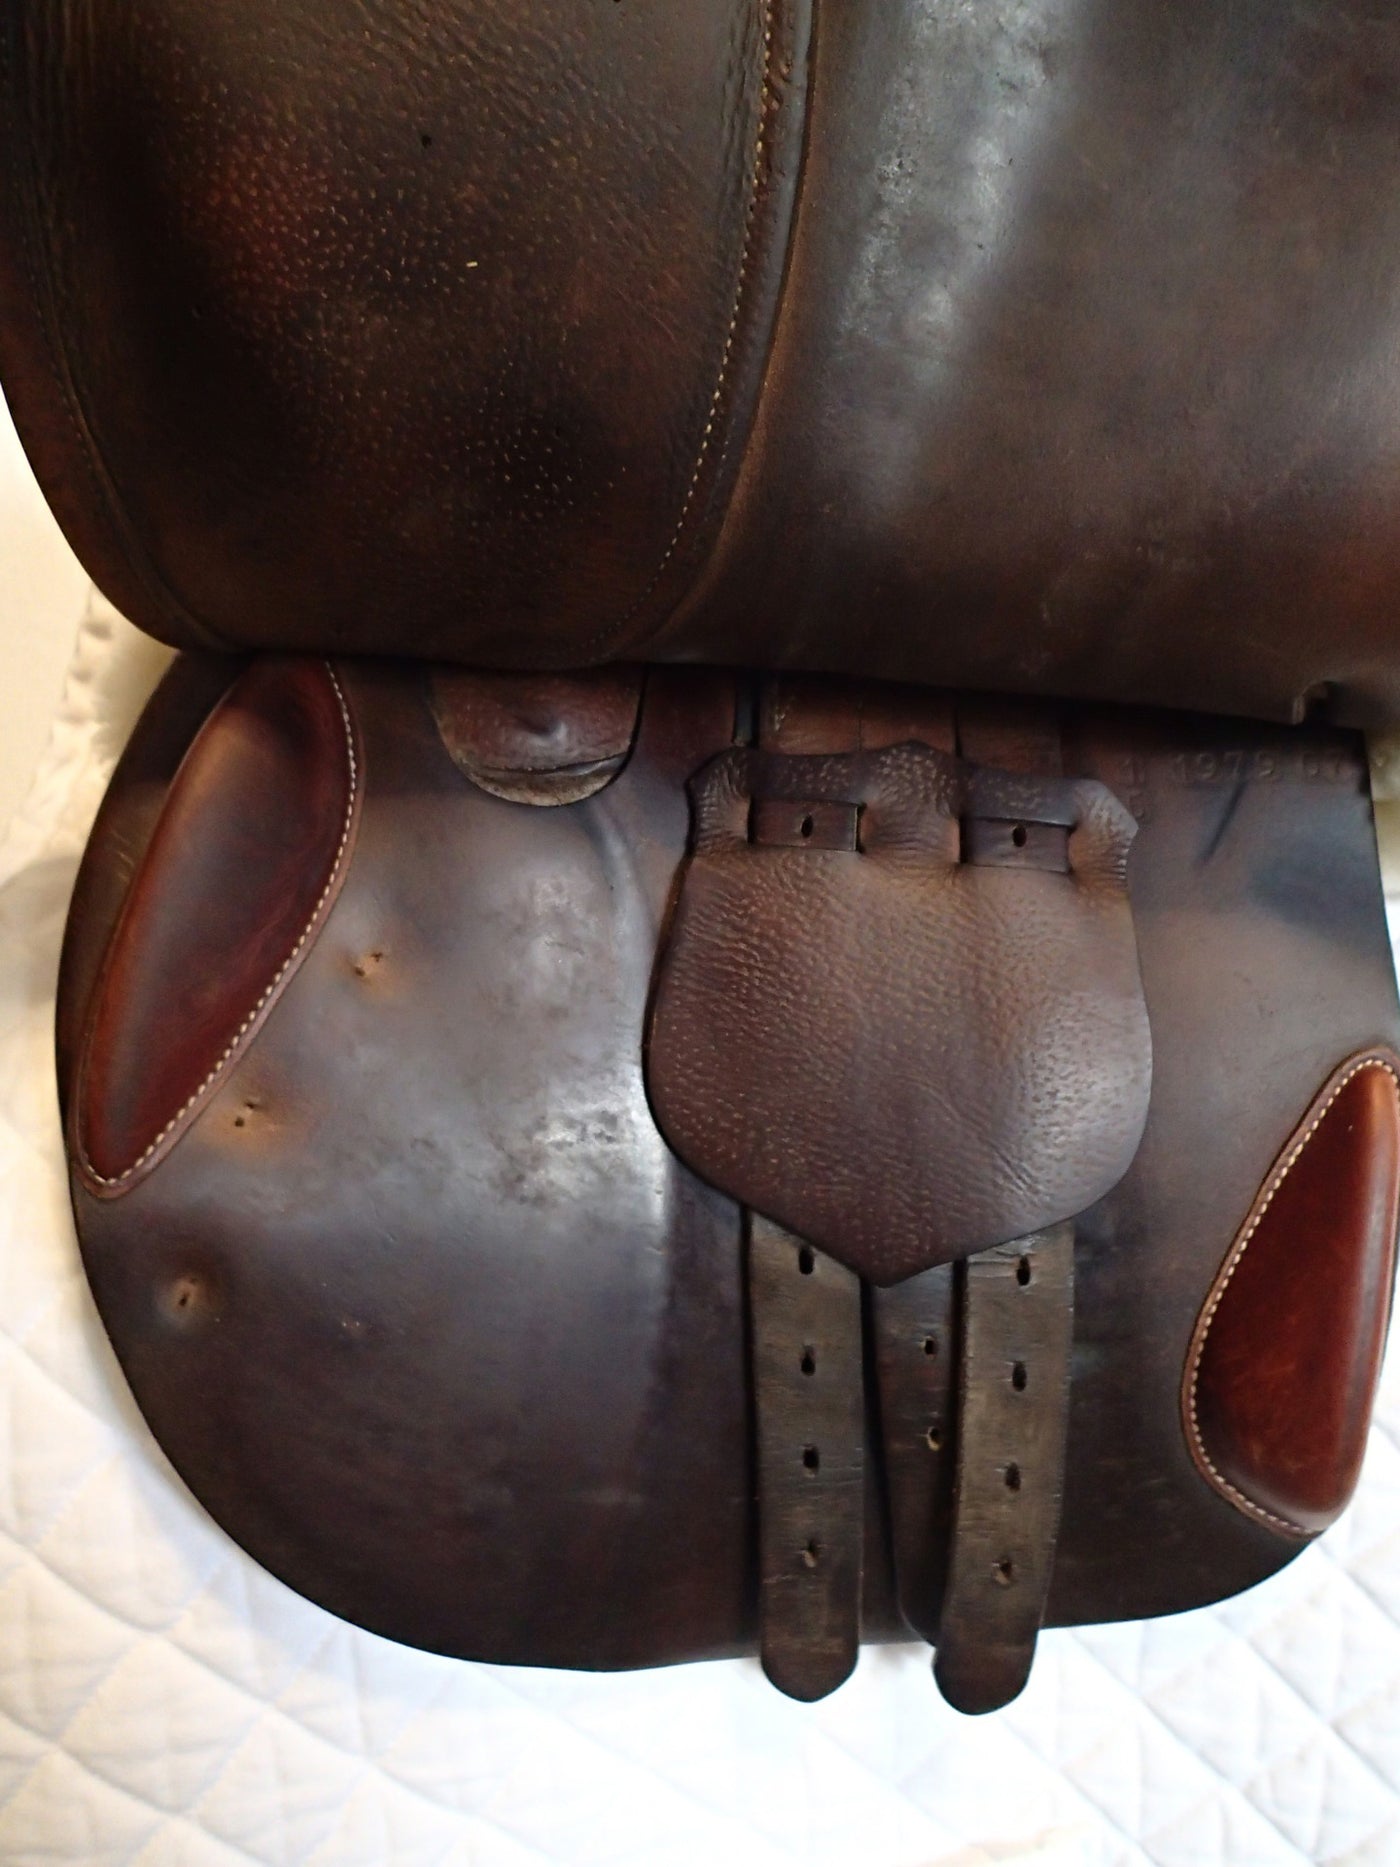 17" Butet Saddle - 2007 - C Seat - 1.5 Flaps - 4.5" dot to dot